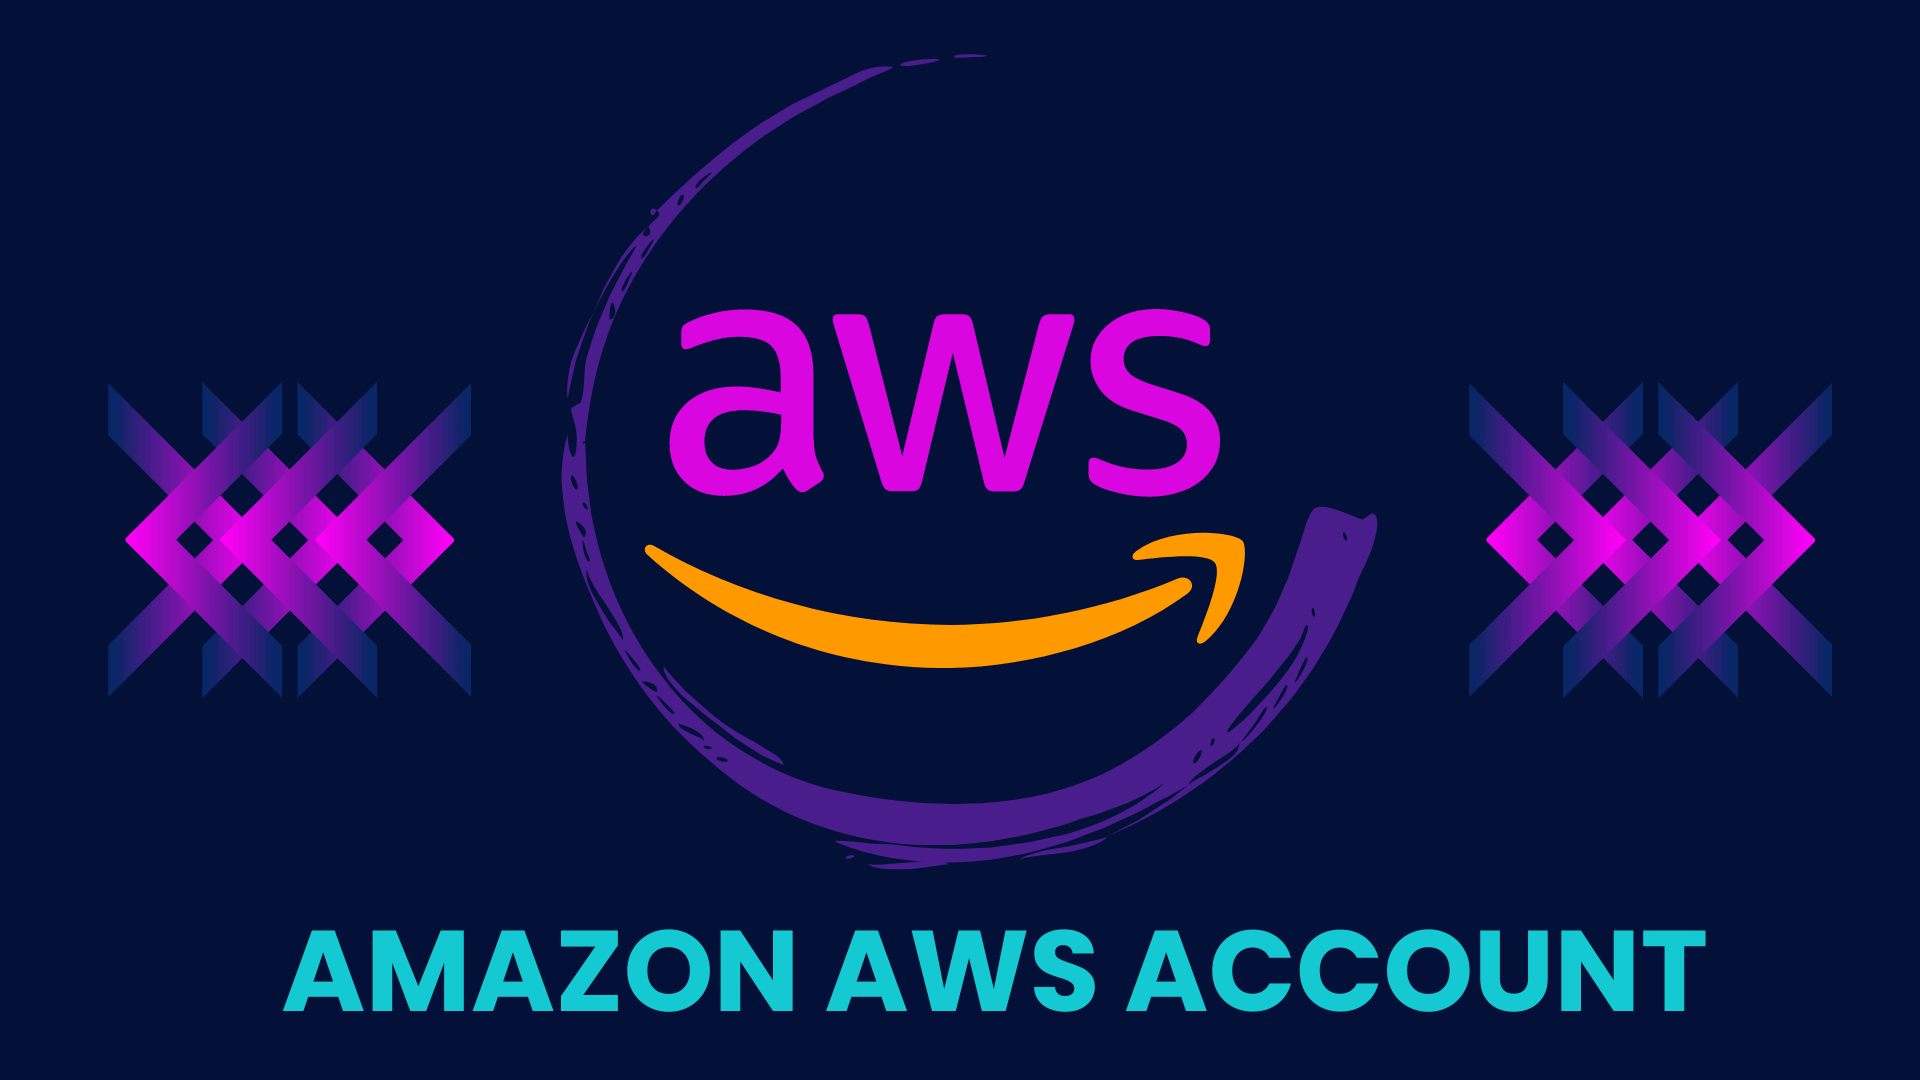 buy amazon aws accounts